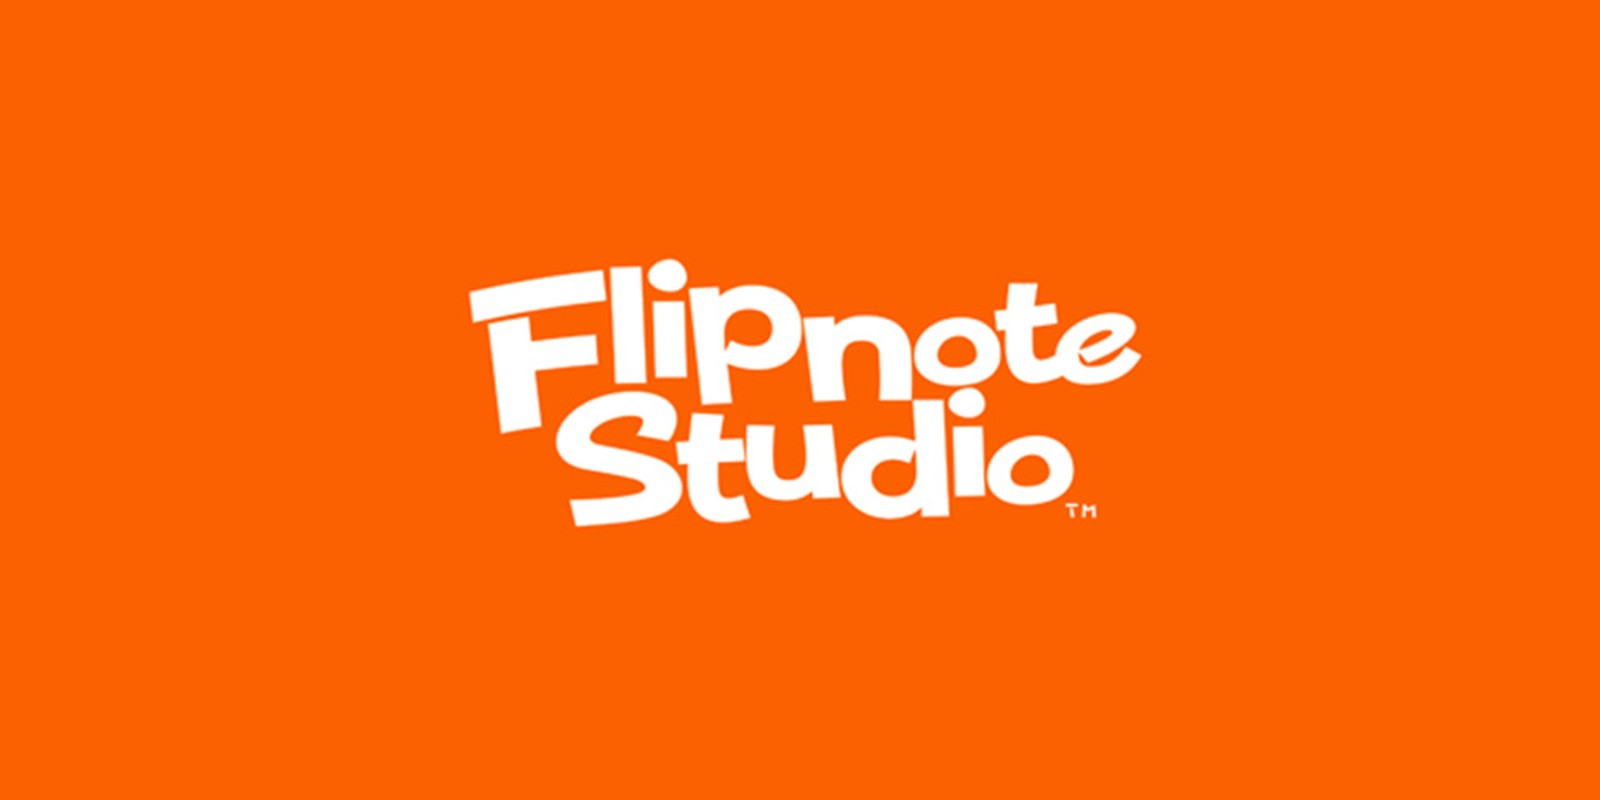 flipnote studio 3ds no download code